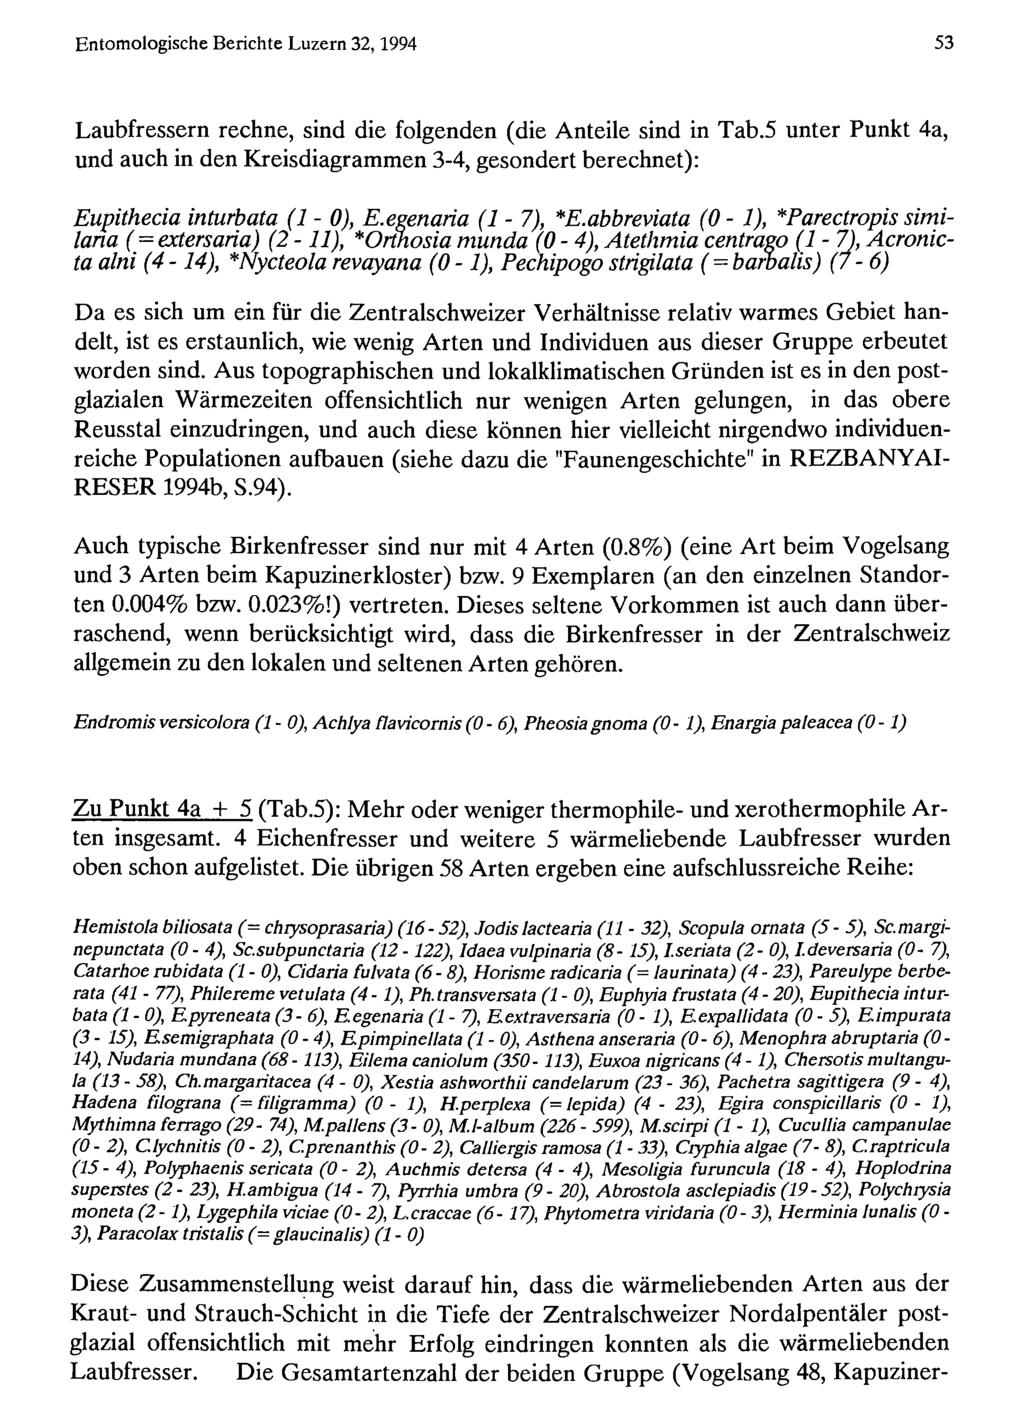 Entomologische Natur-Museum Berichte Luzern 32,1994 und Entomologische Gesellschaft Luzern; download www.biologiezentrum.at 53 Laubfressern rechne, sind die folgenden (die Anteile sind in Tab.